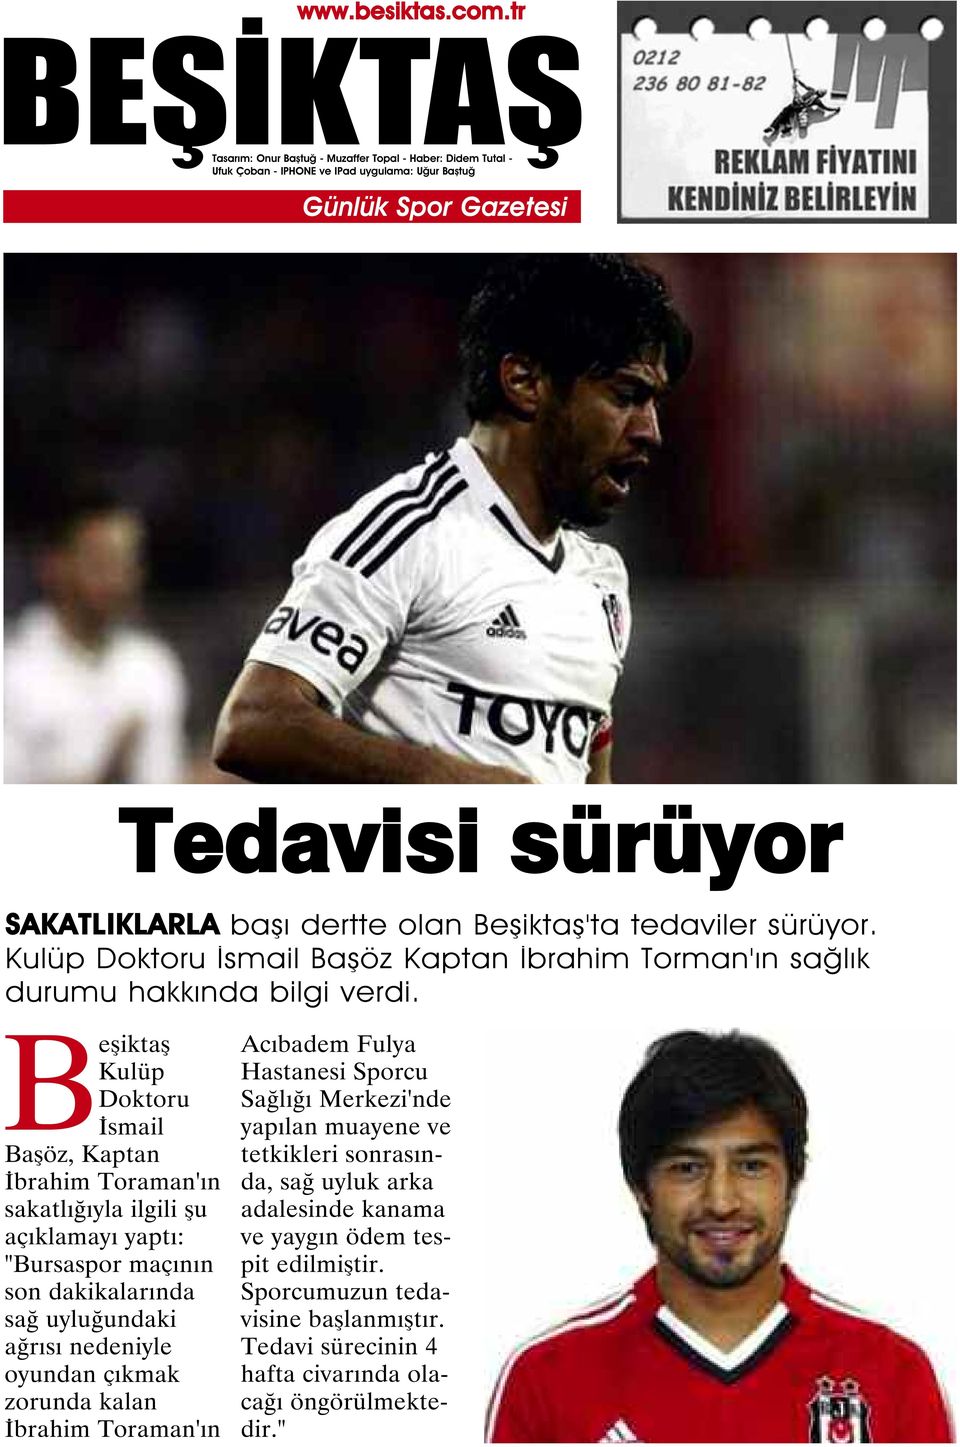 Beşiktaş Kulüp Doktoru İsmail Başöz, Kaptan İbrahim Toraman'ın sakatlığıyla ilgili şu açıklamayı yaptı: "Bursaspor maçının son dakikalarında sağ uyluğundaki